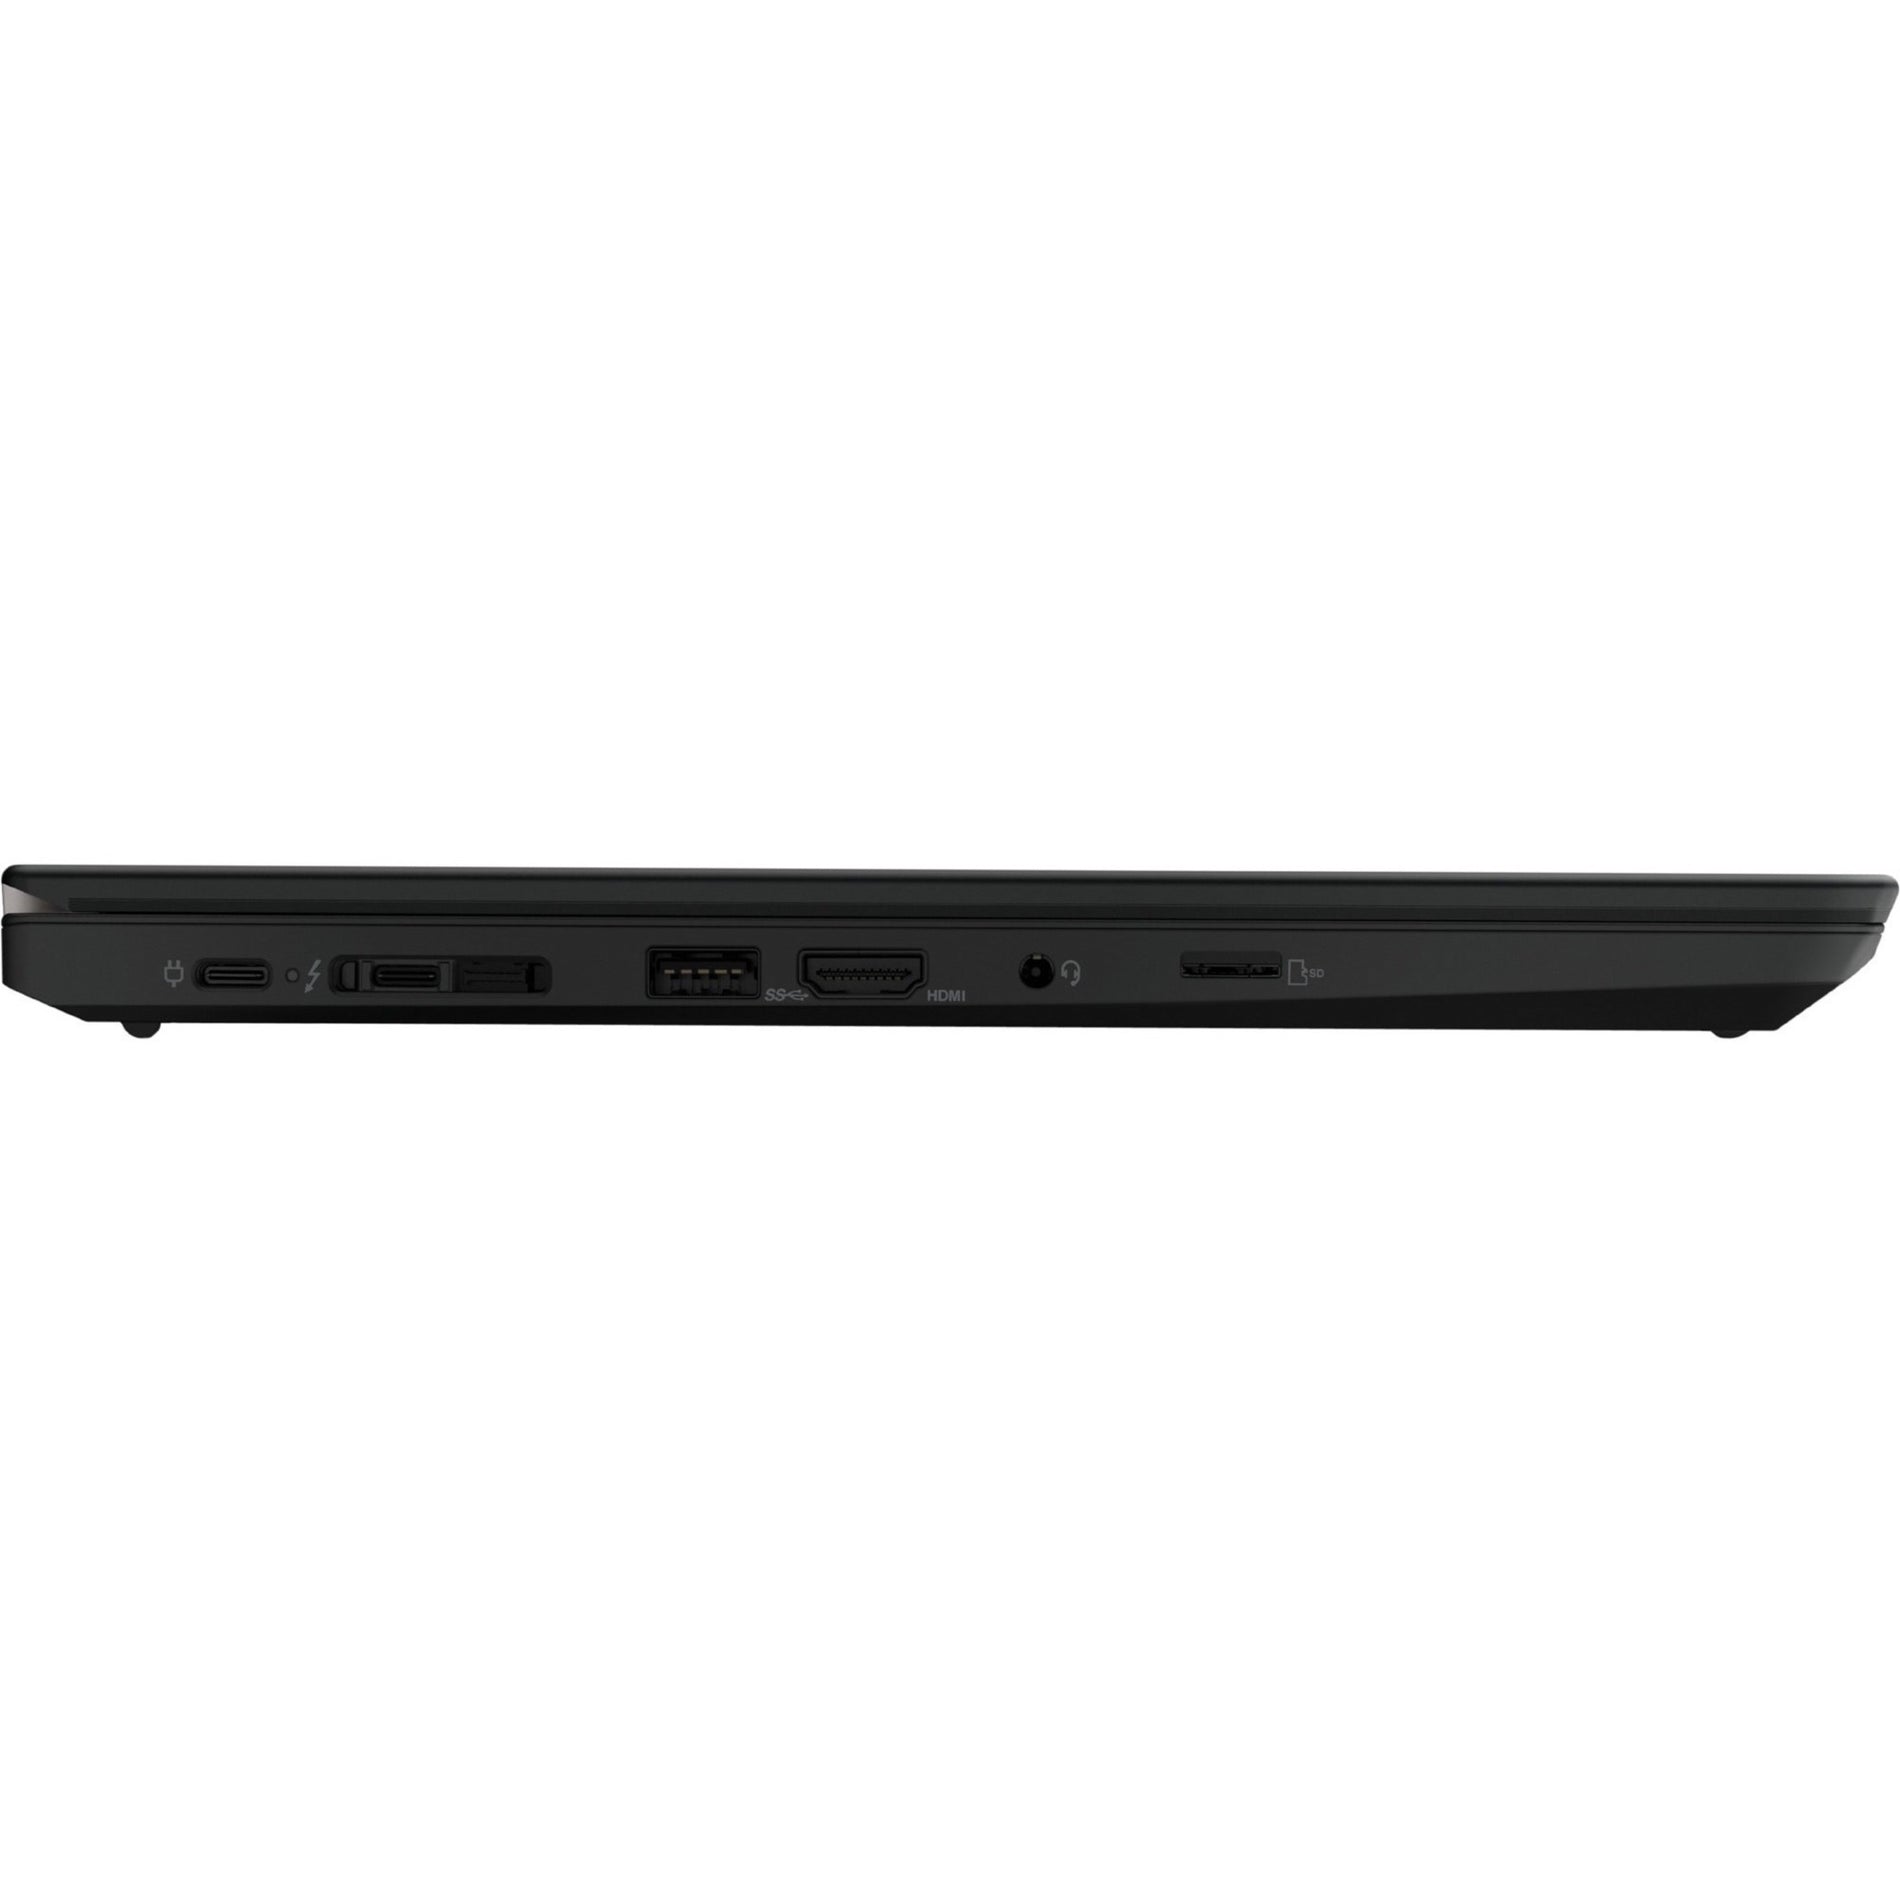 Lenovo 20W000T3US ThinkPad T14 Gen2, 14" Full HD, Core i5, 8GB RAM, 256GB SSD, Windows 10 Pro